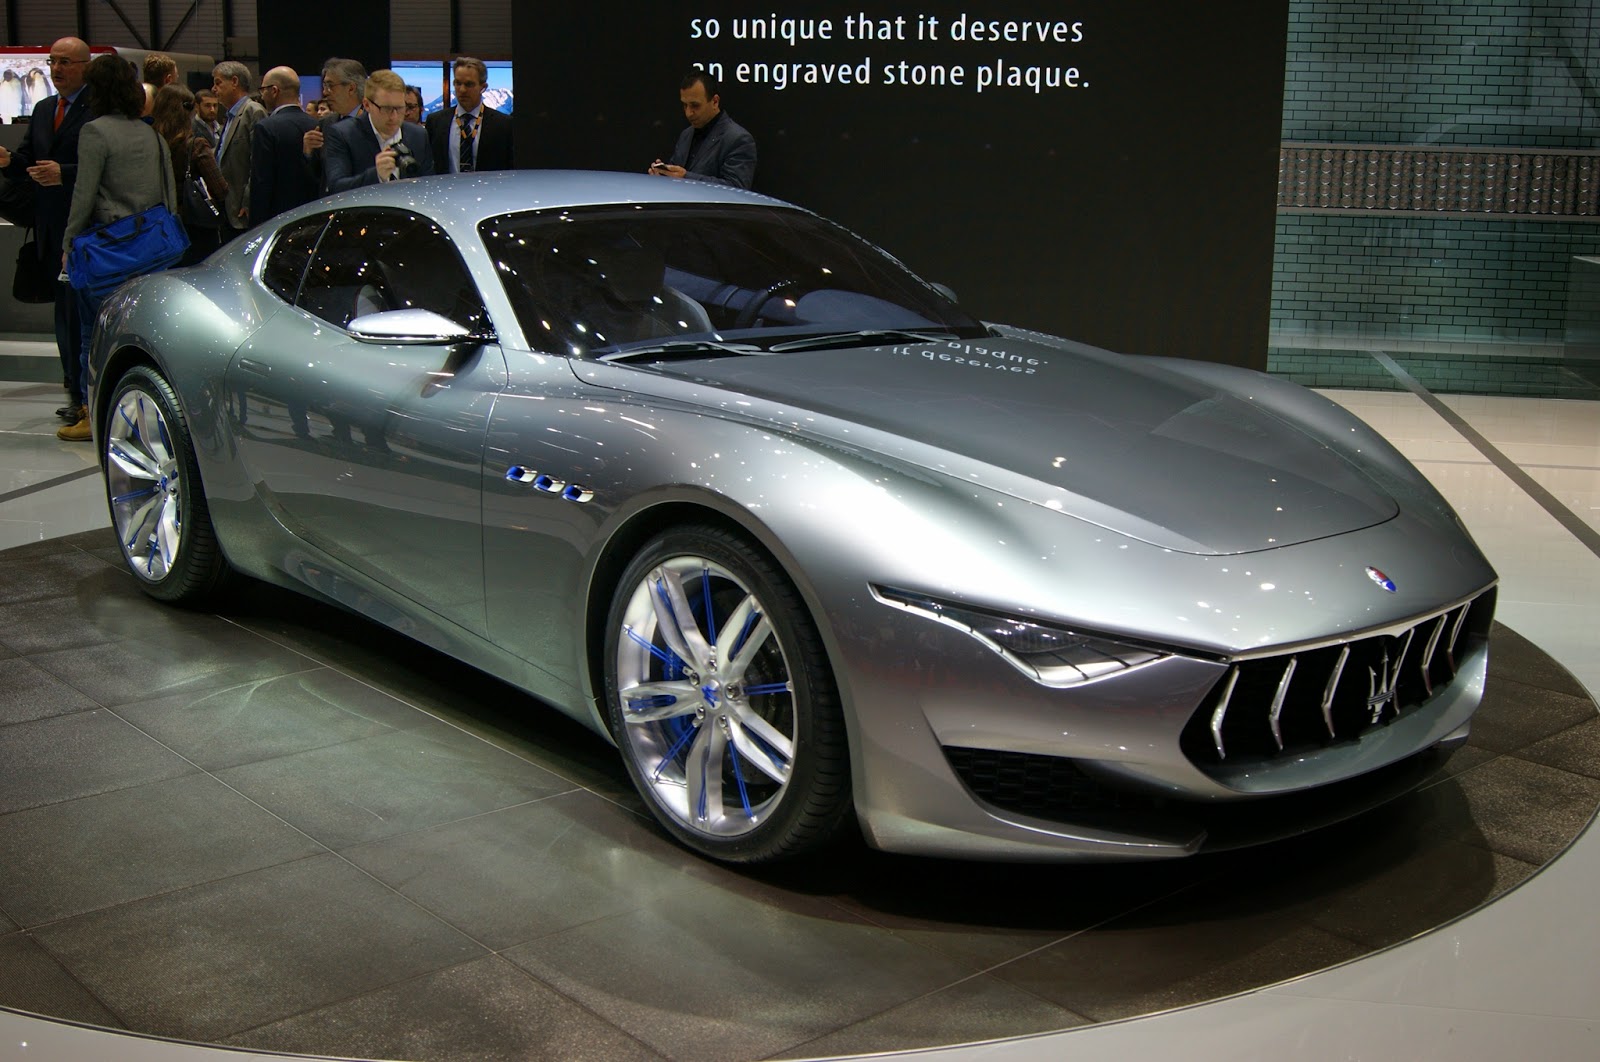 Maserati limita la produzione per mantenere esclusività